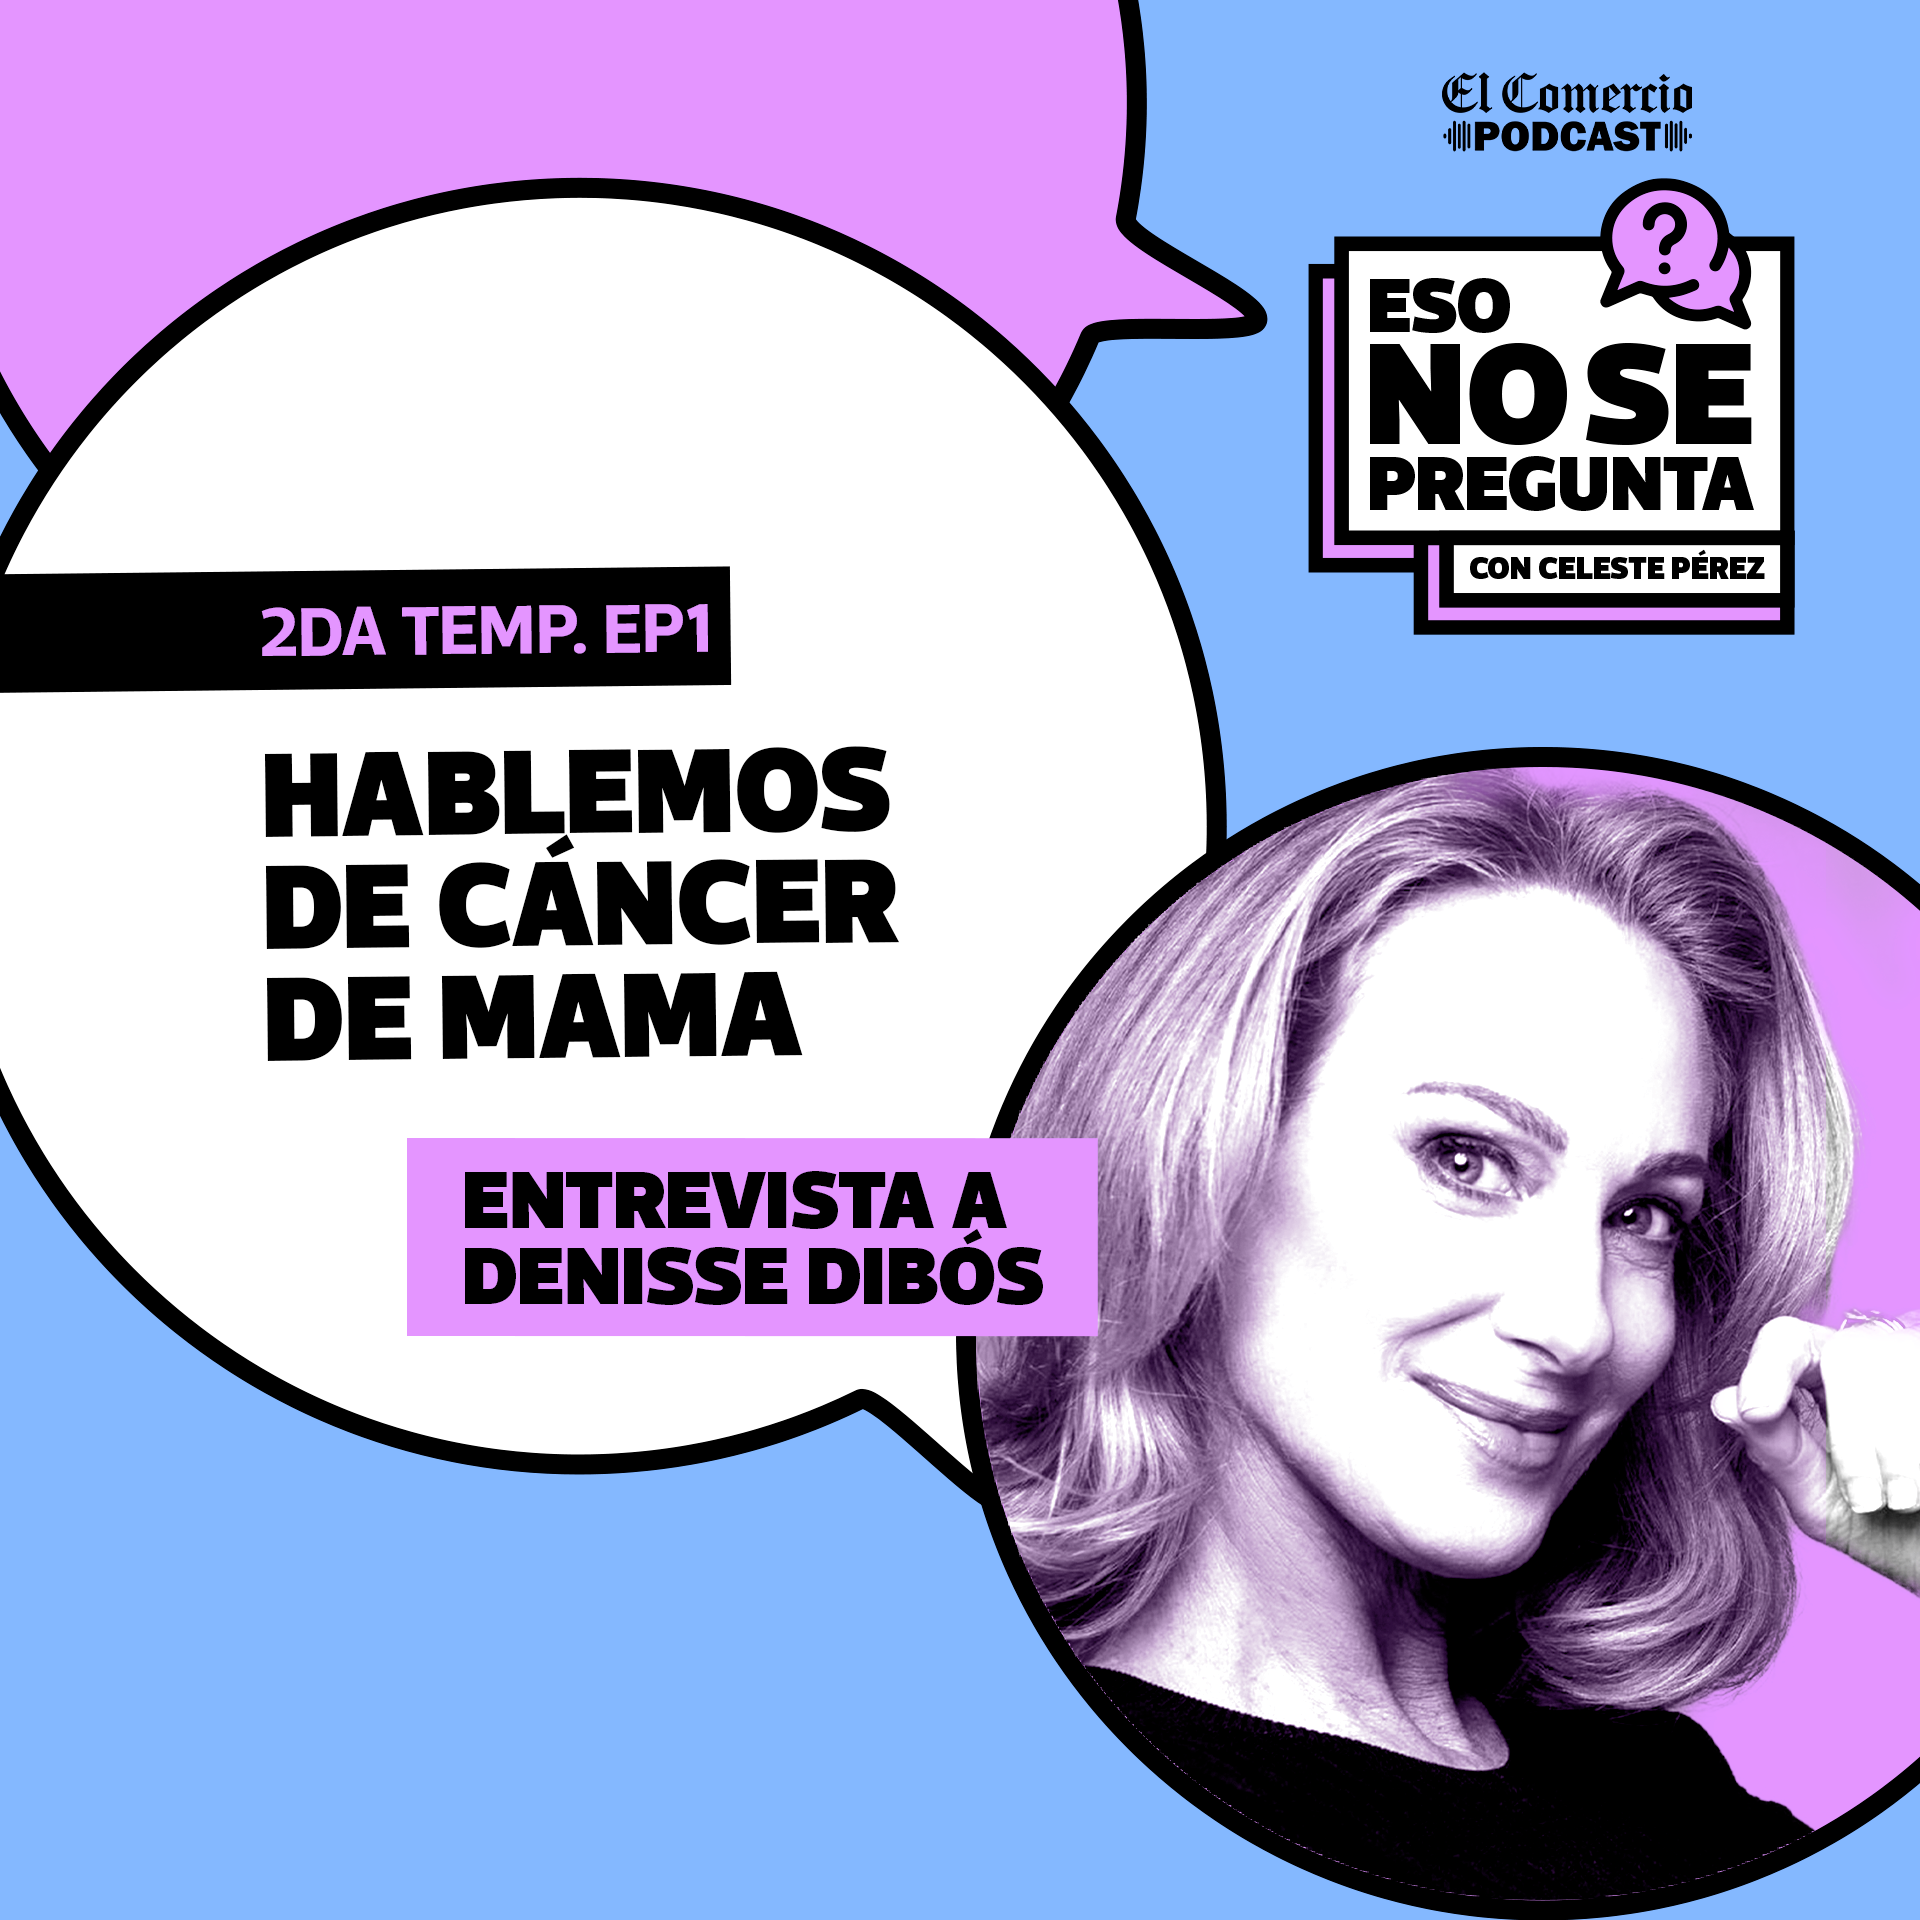 Hablemos del cáncer de mama, con Denisse Dibos y Thalía Echecopar